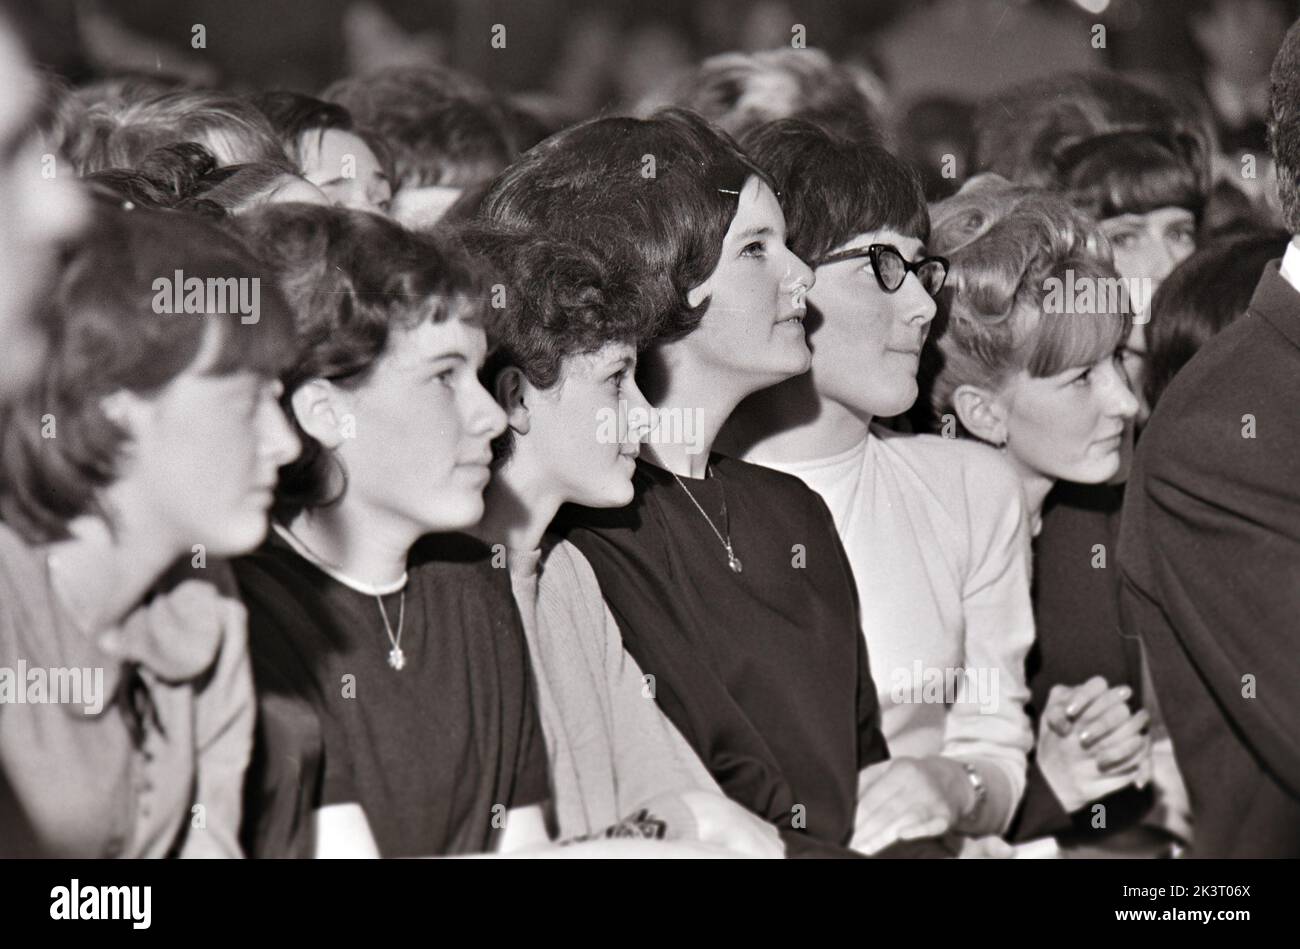 ADOLESCENTES en el Royal, Tottenham, Londres, en enero de 1964 viendo el grupo pop Dave Clark Five. Foto: Tony Gale Foto de stock